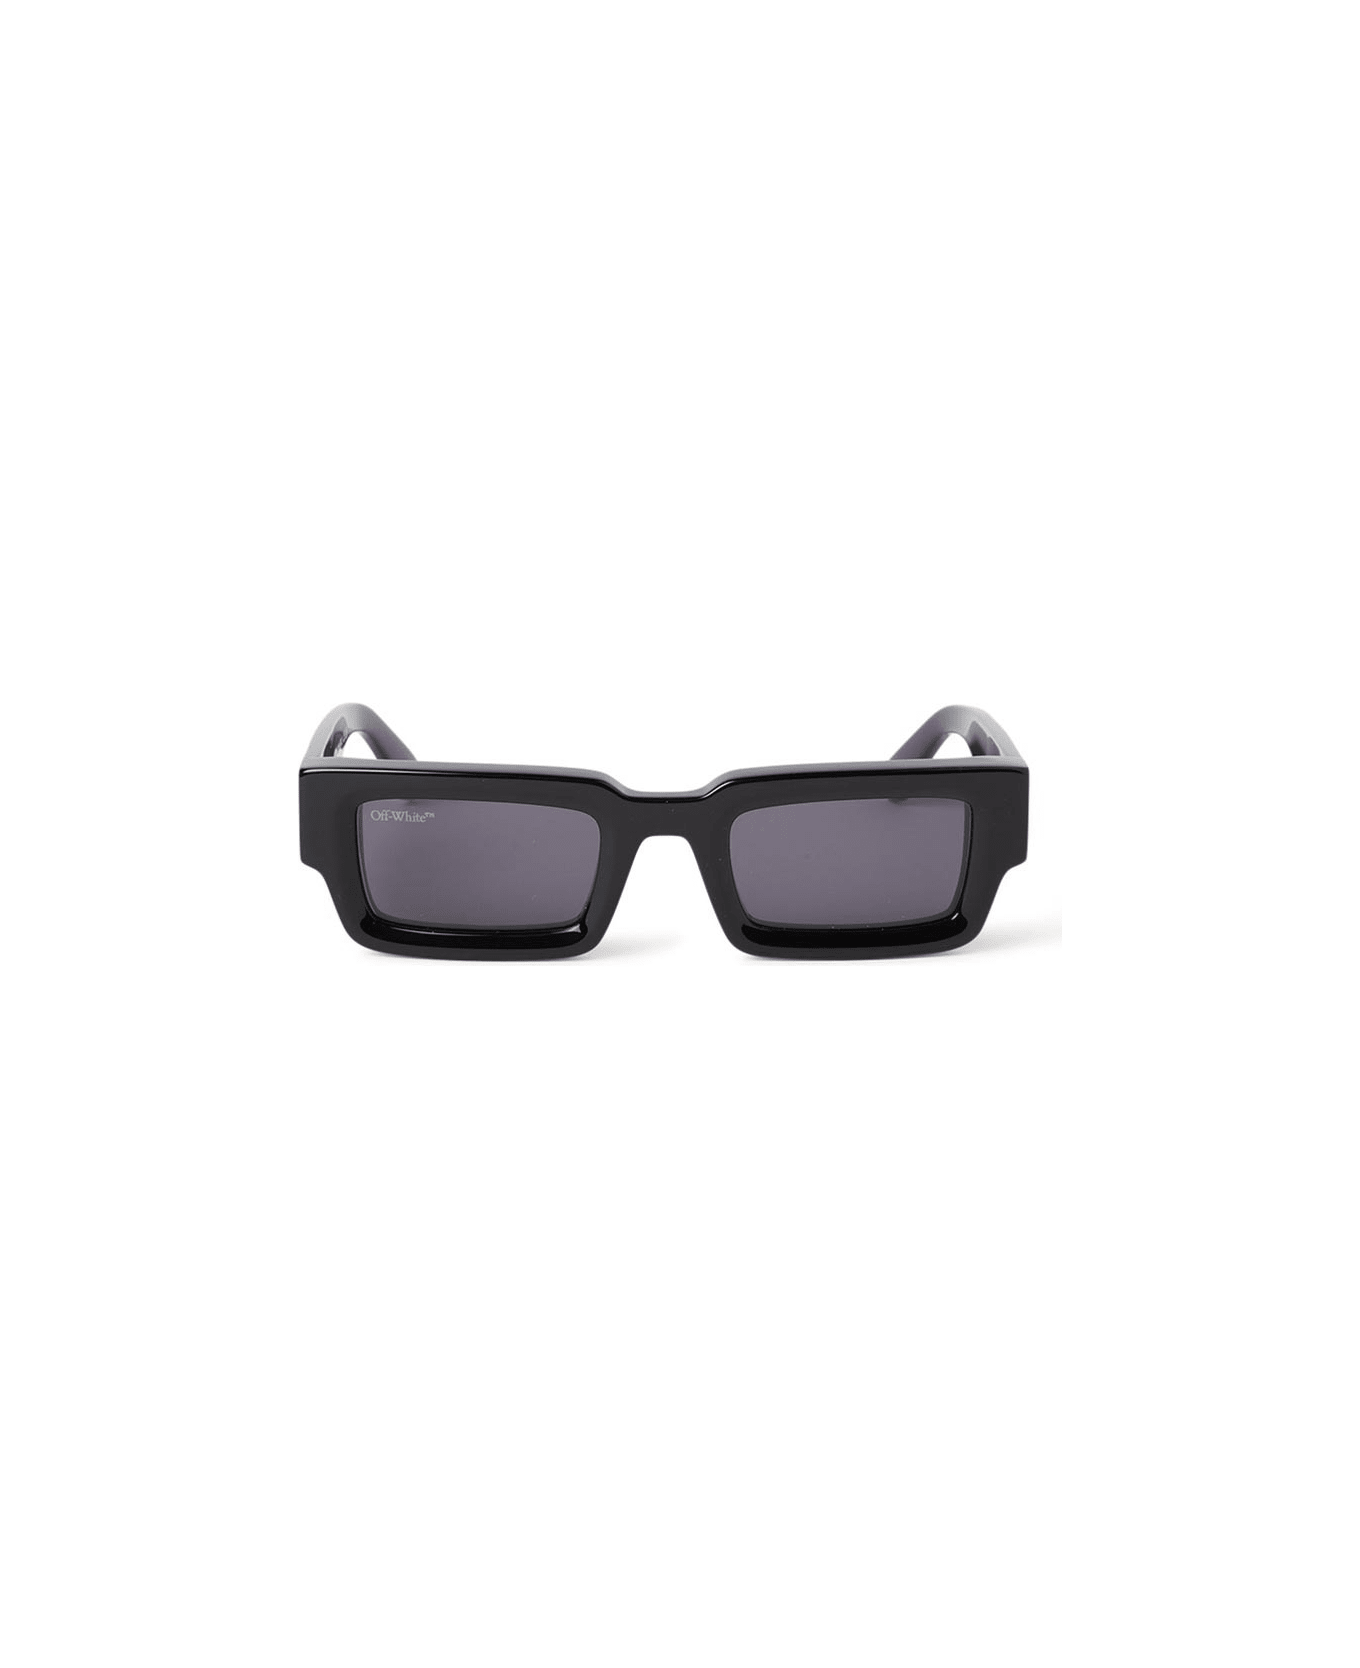 Off-White Lecce Sunglasses - Nero/Grigio